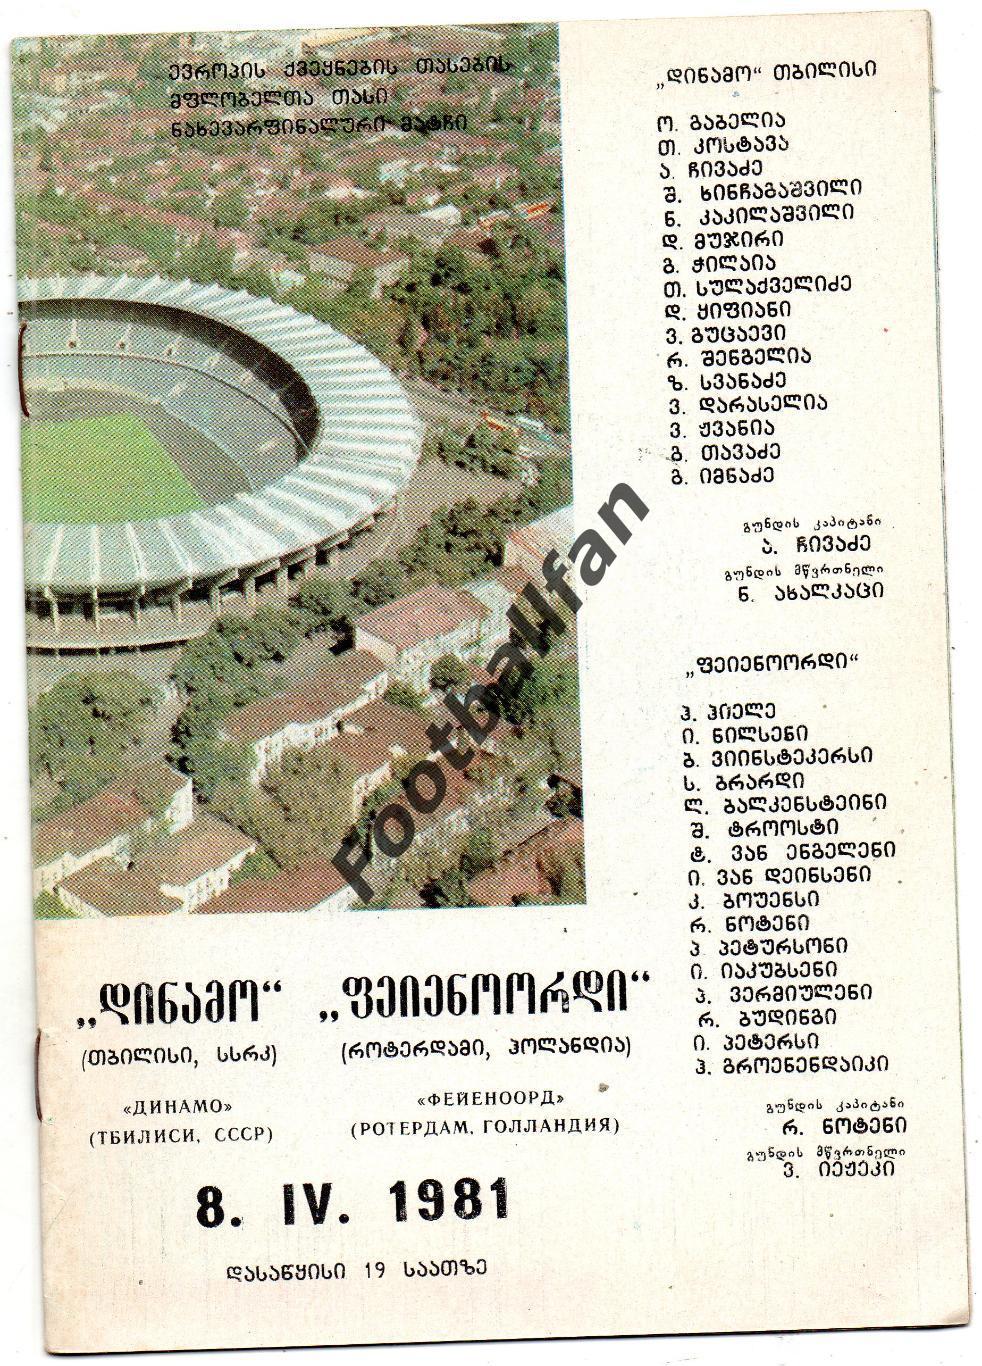 Динамо Тбилиси , СССР - Фейеноорд Роттердам , Голландия ( Нидерланды) 08.04.1981